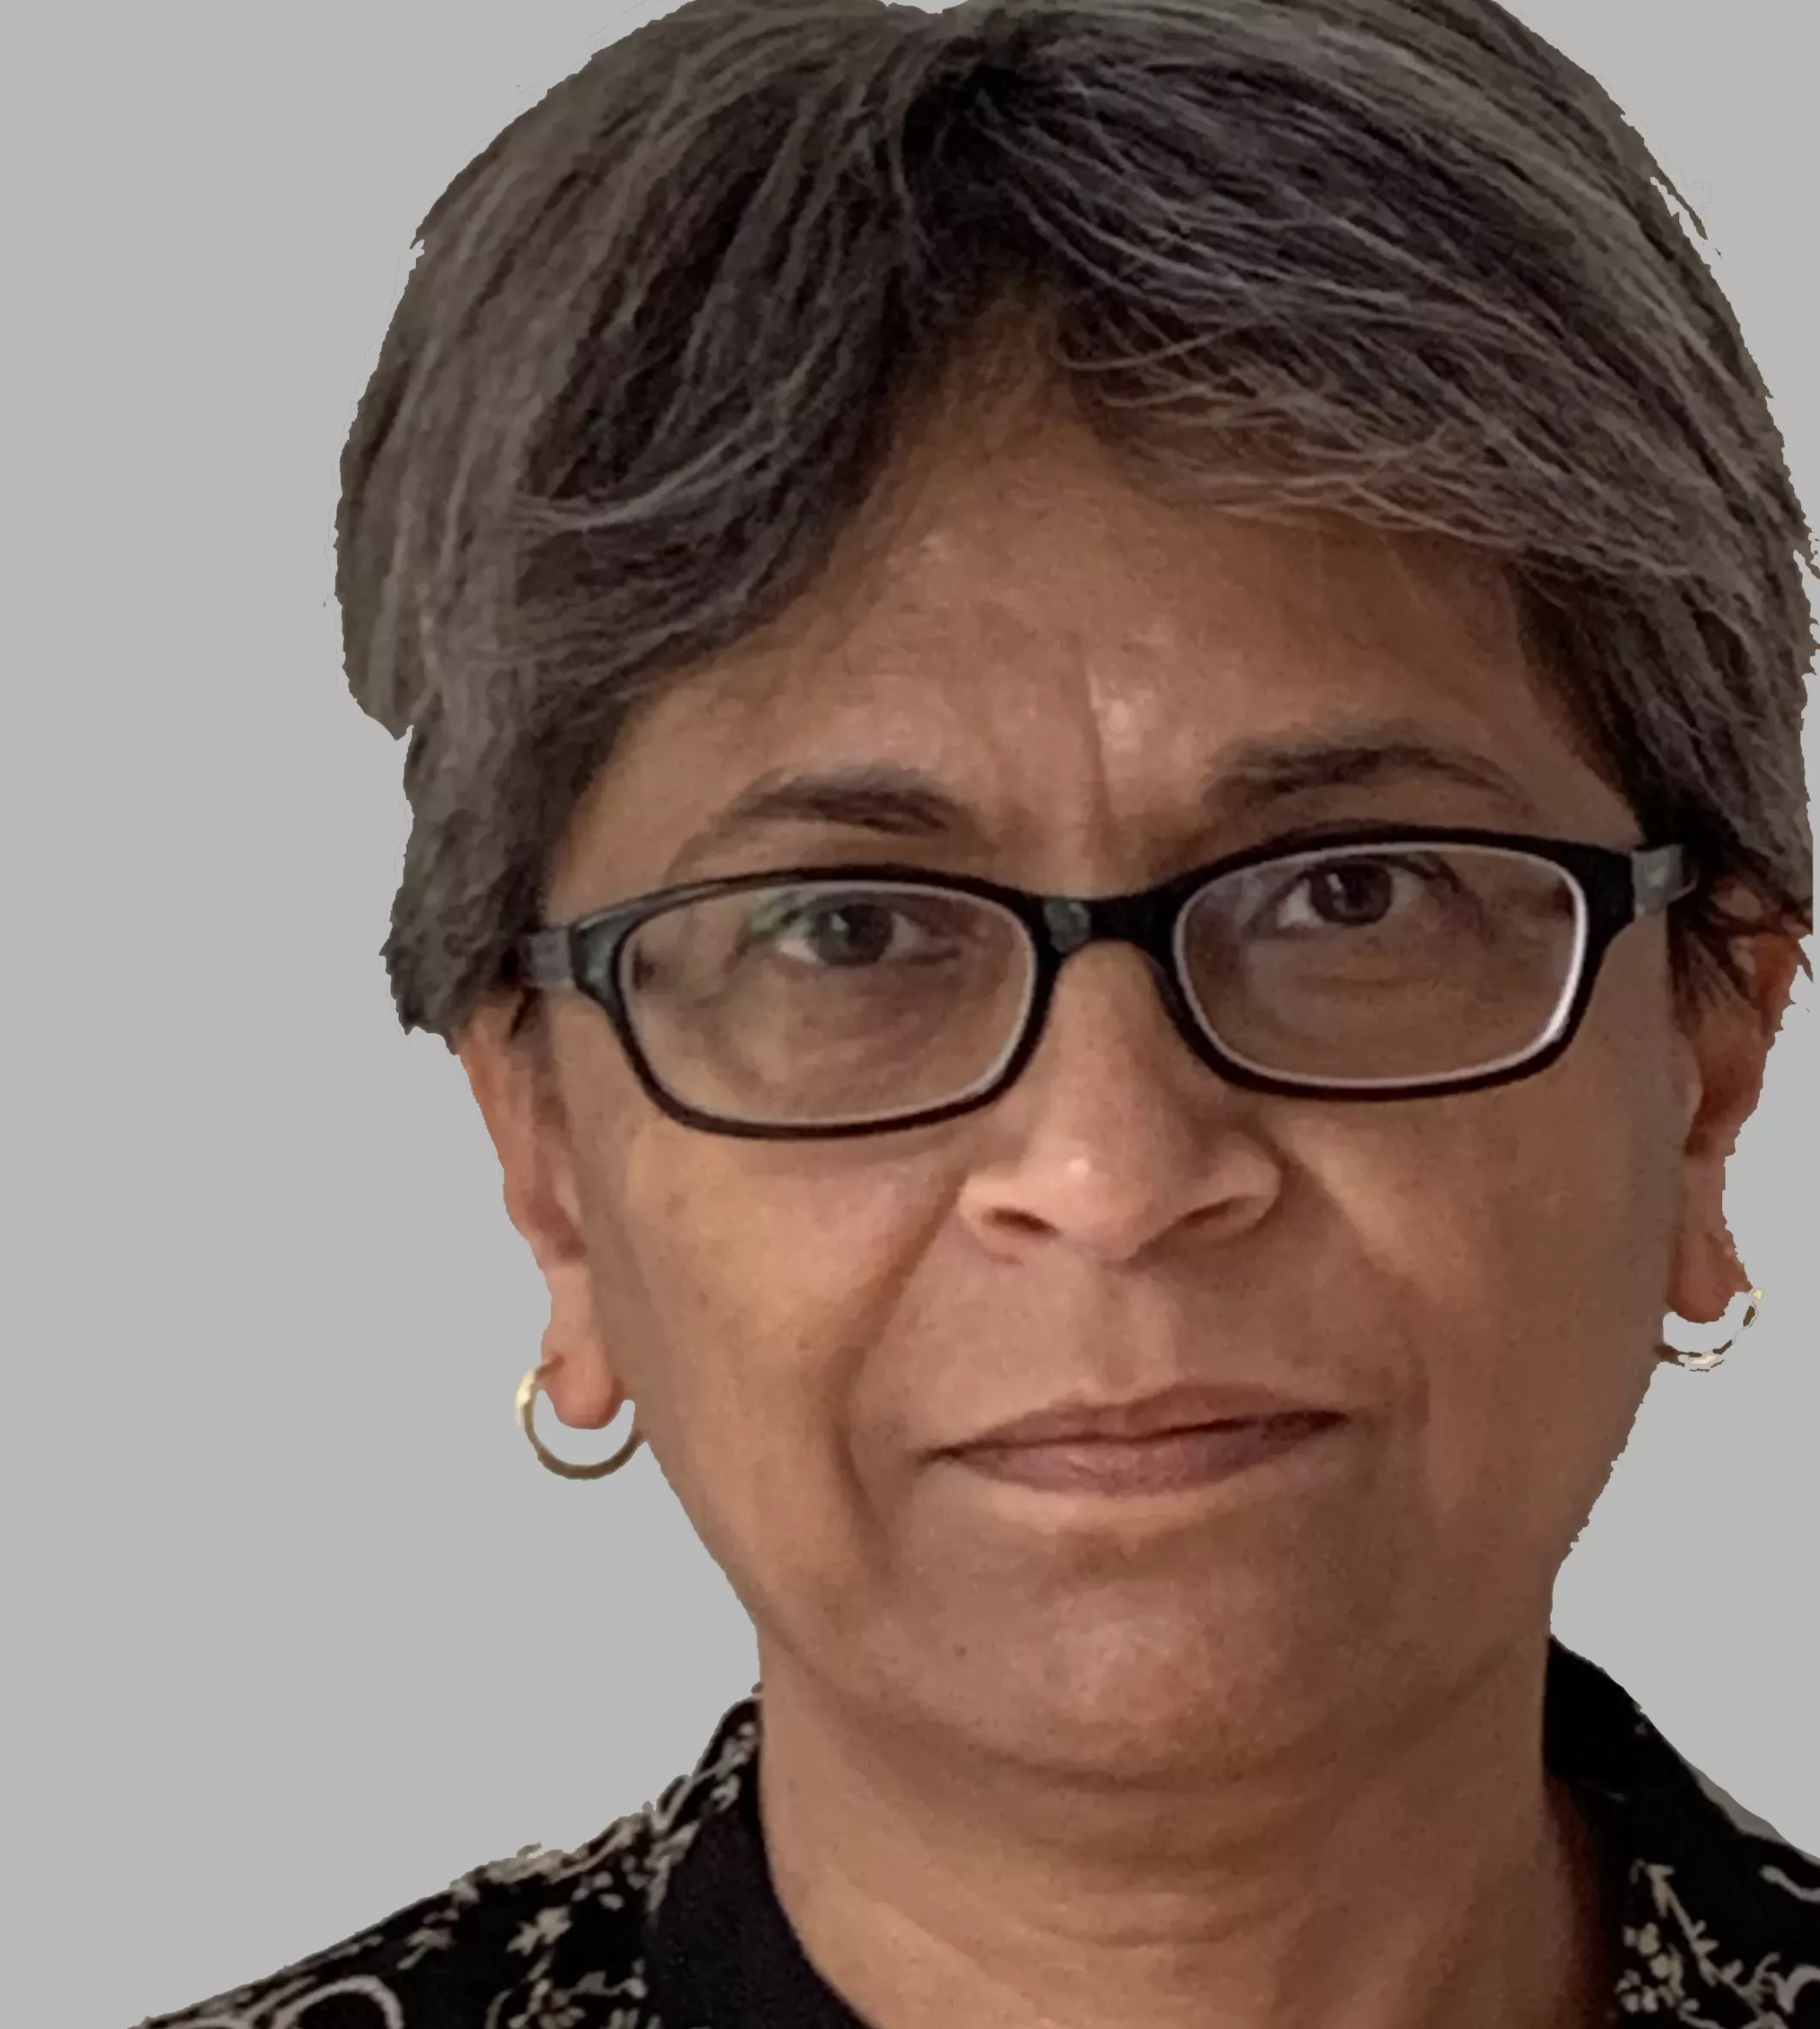 Bhavana Patel